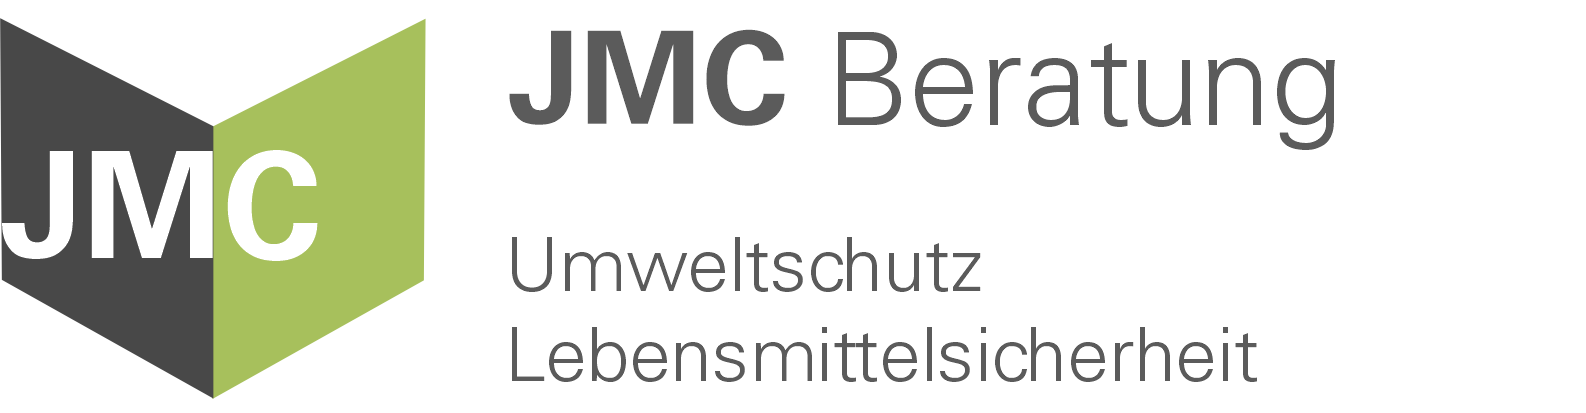 JMC Beratung Logo